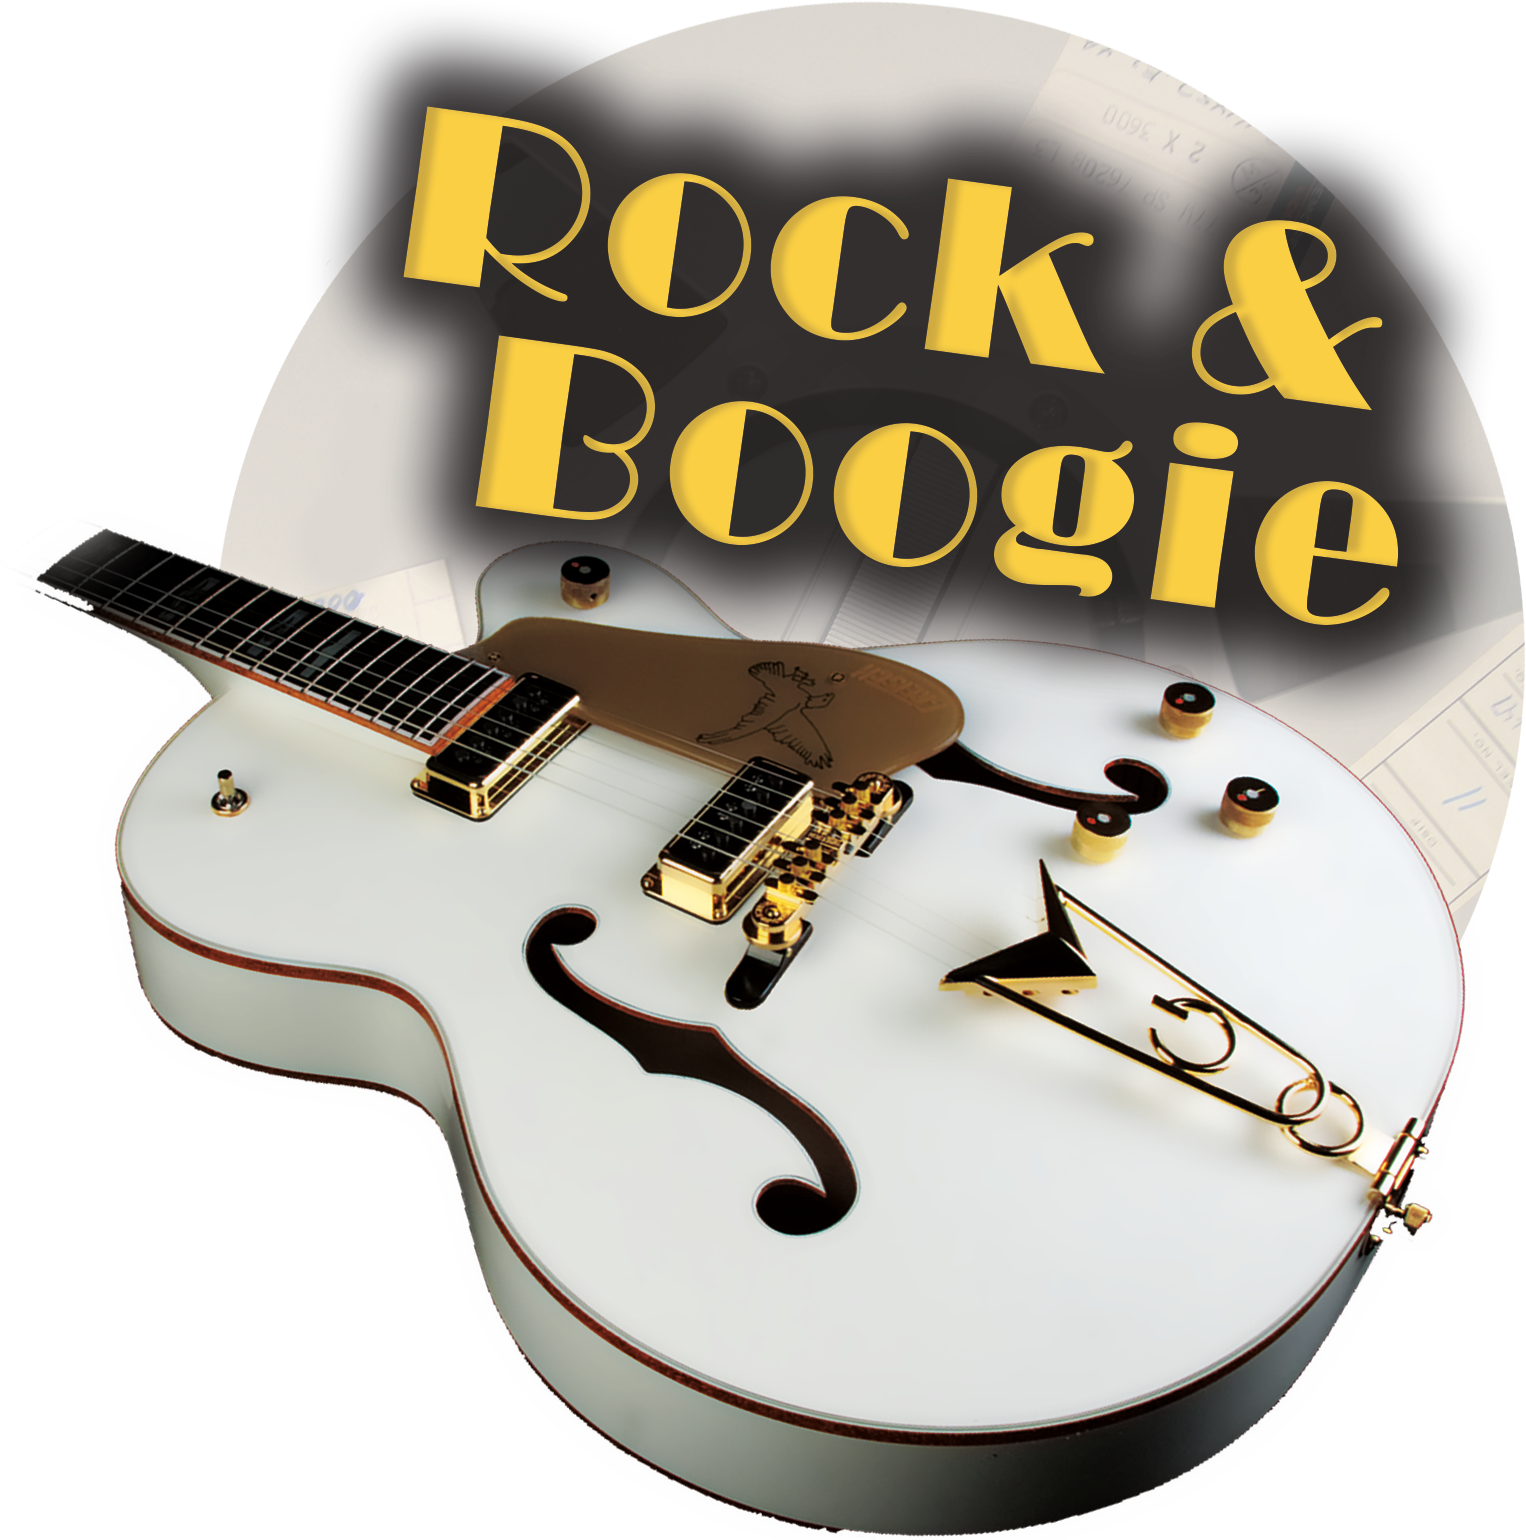 Stereo Production présente Rock 'N Boogie